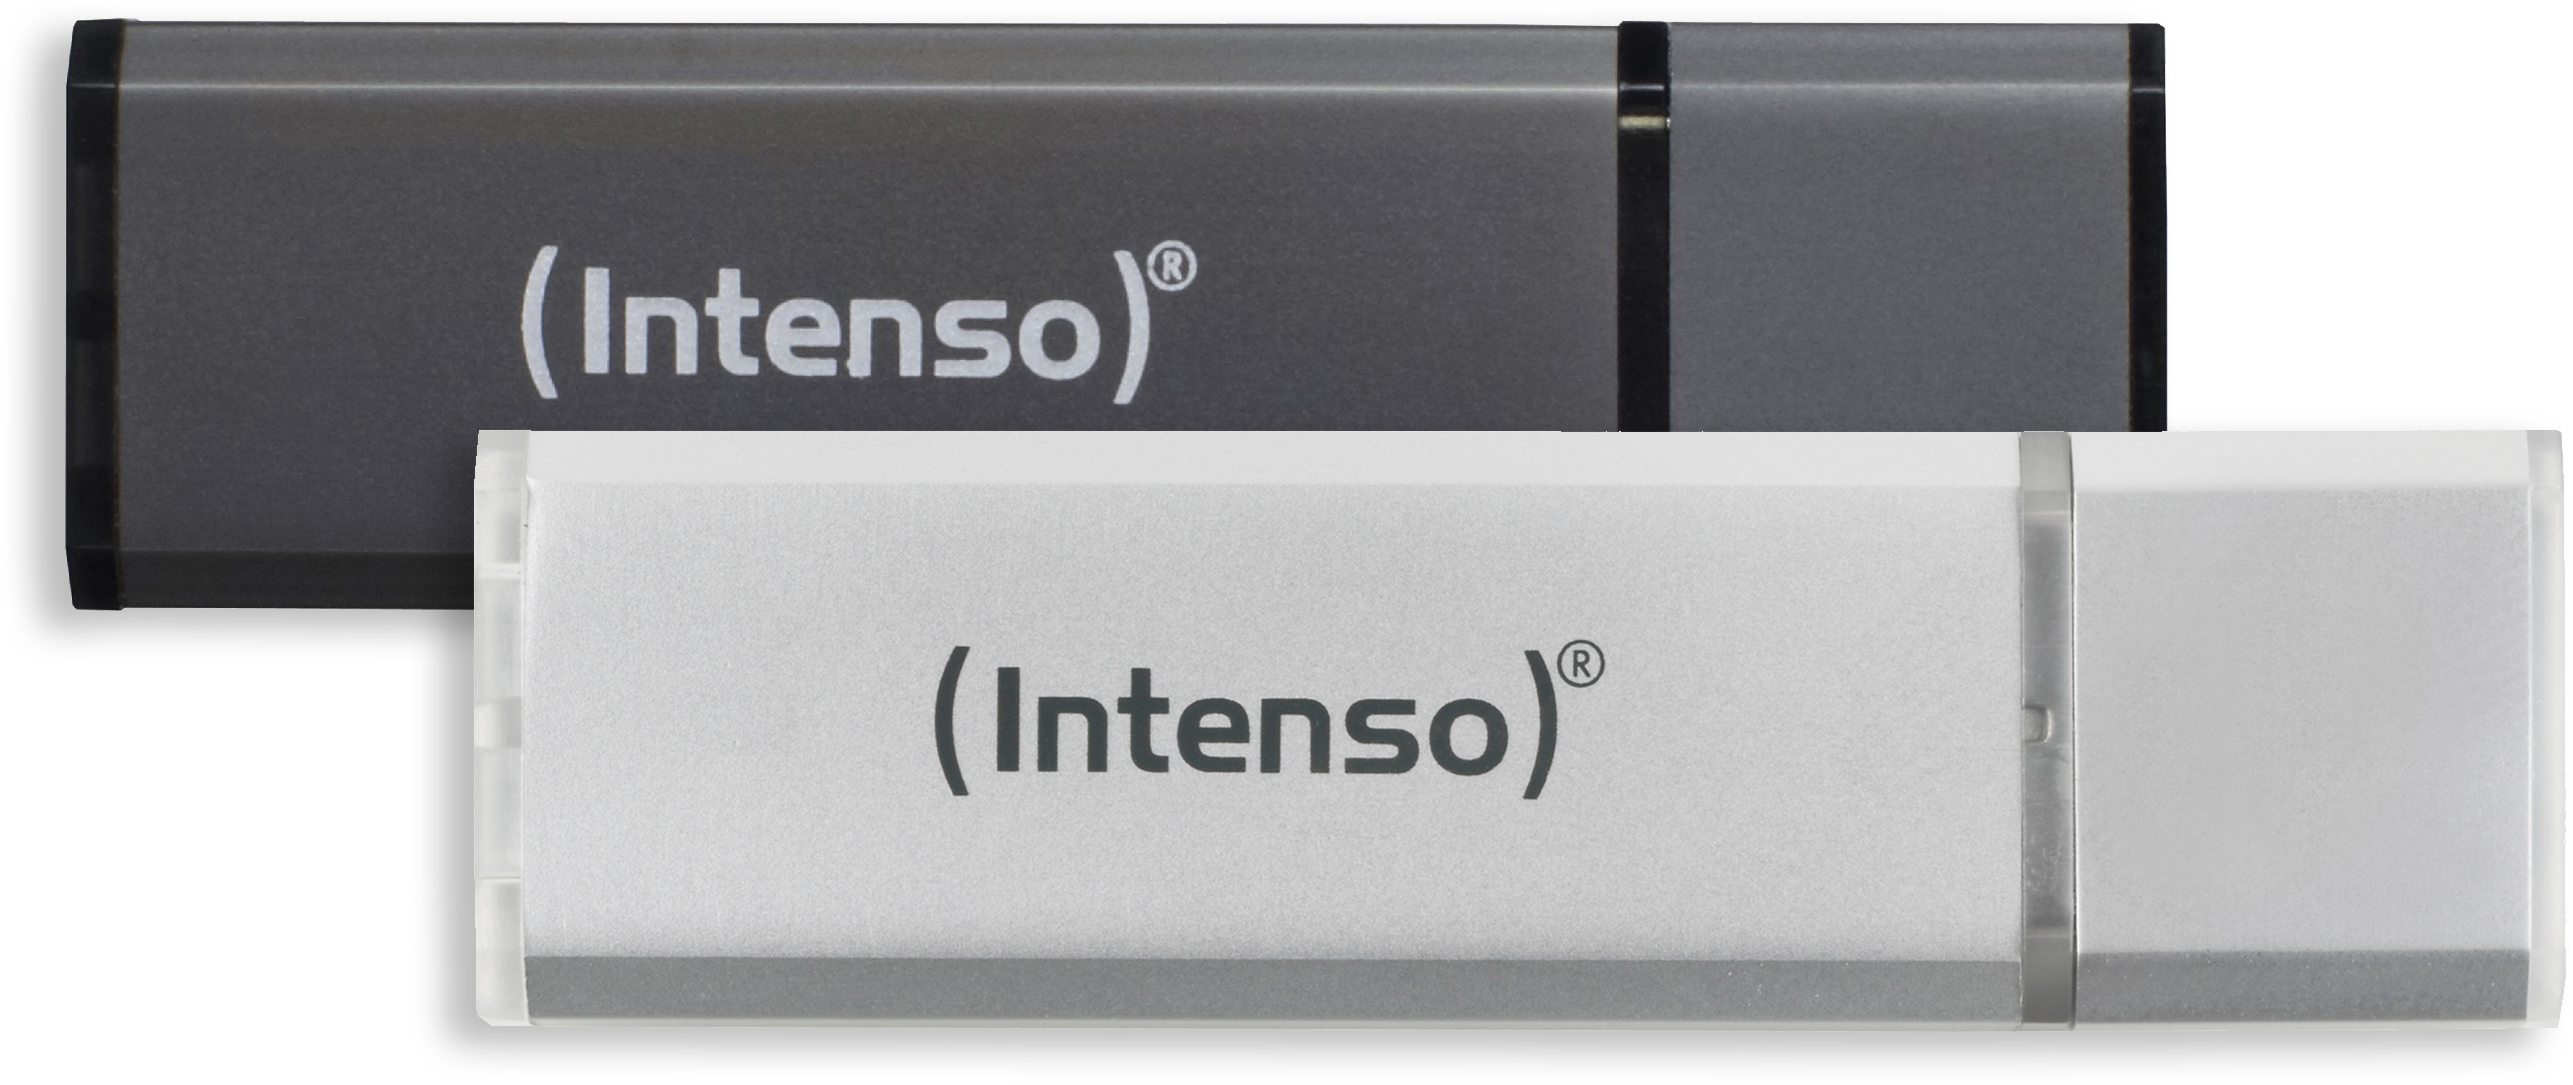 INTENSO Alu Line 2x USB-Stick, GB, 32 Silber/Anthrazit 28,00 MB/s